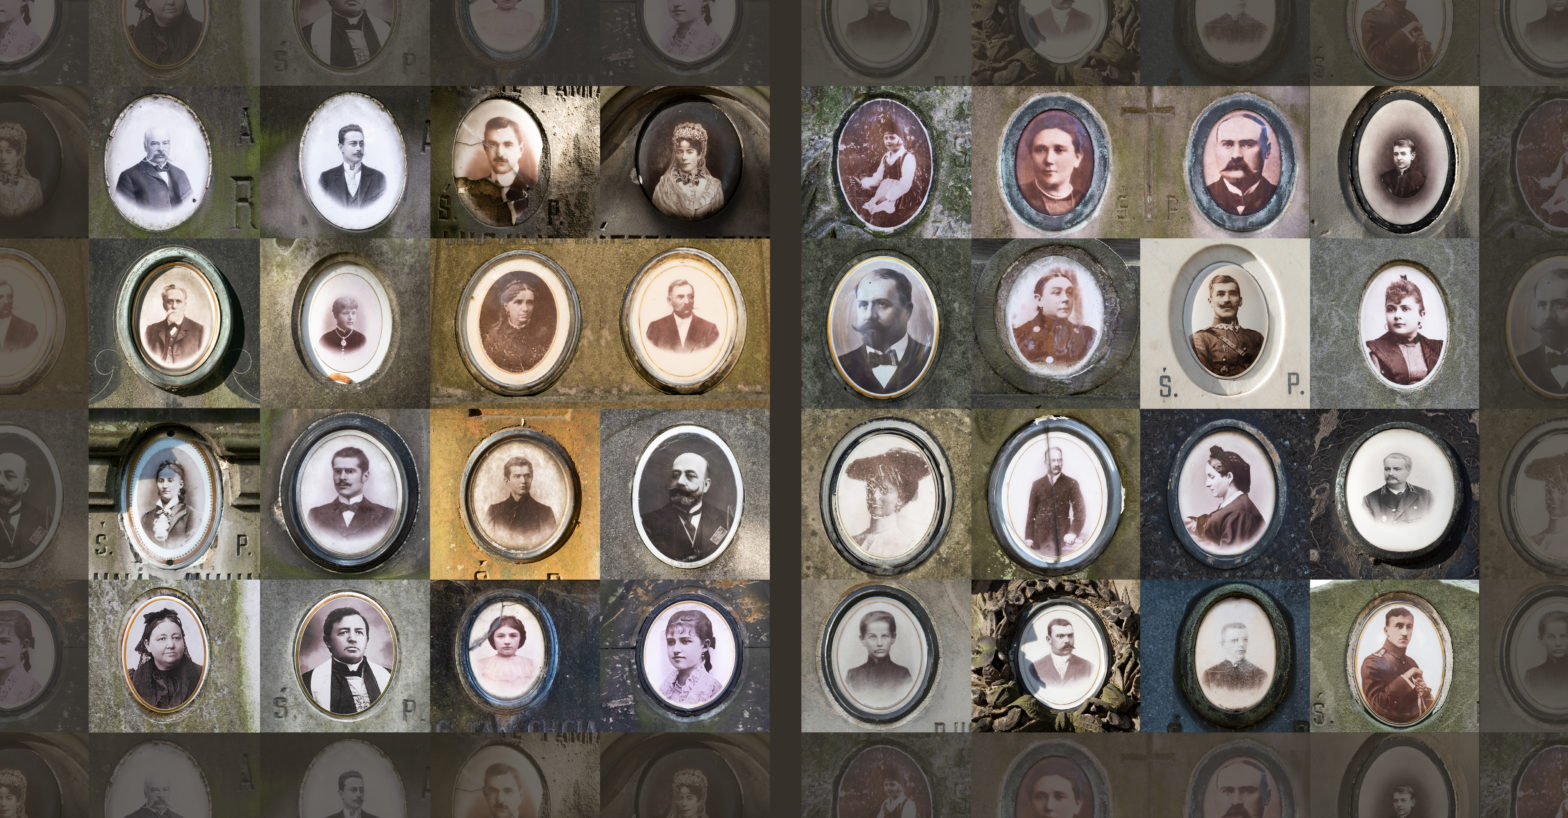 Kolarz stworzony ze zdjęć portretów na nagrobkach.